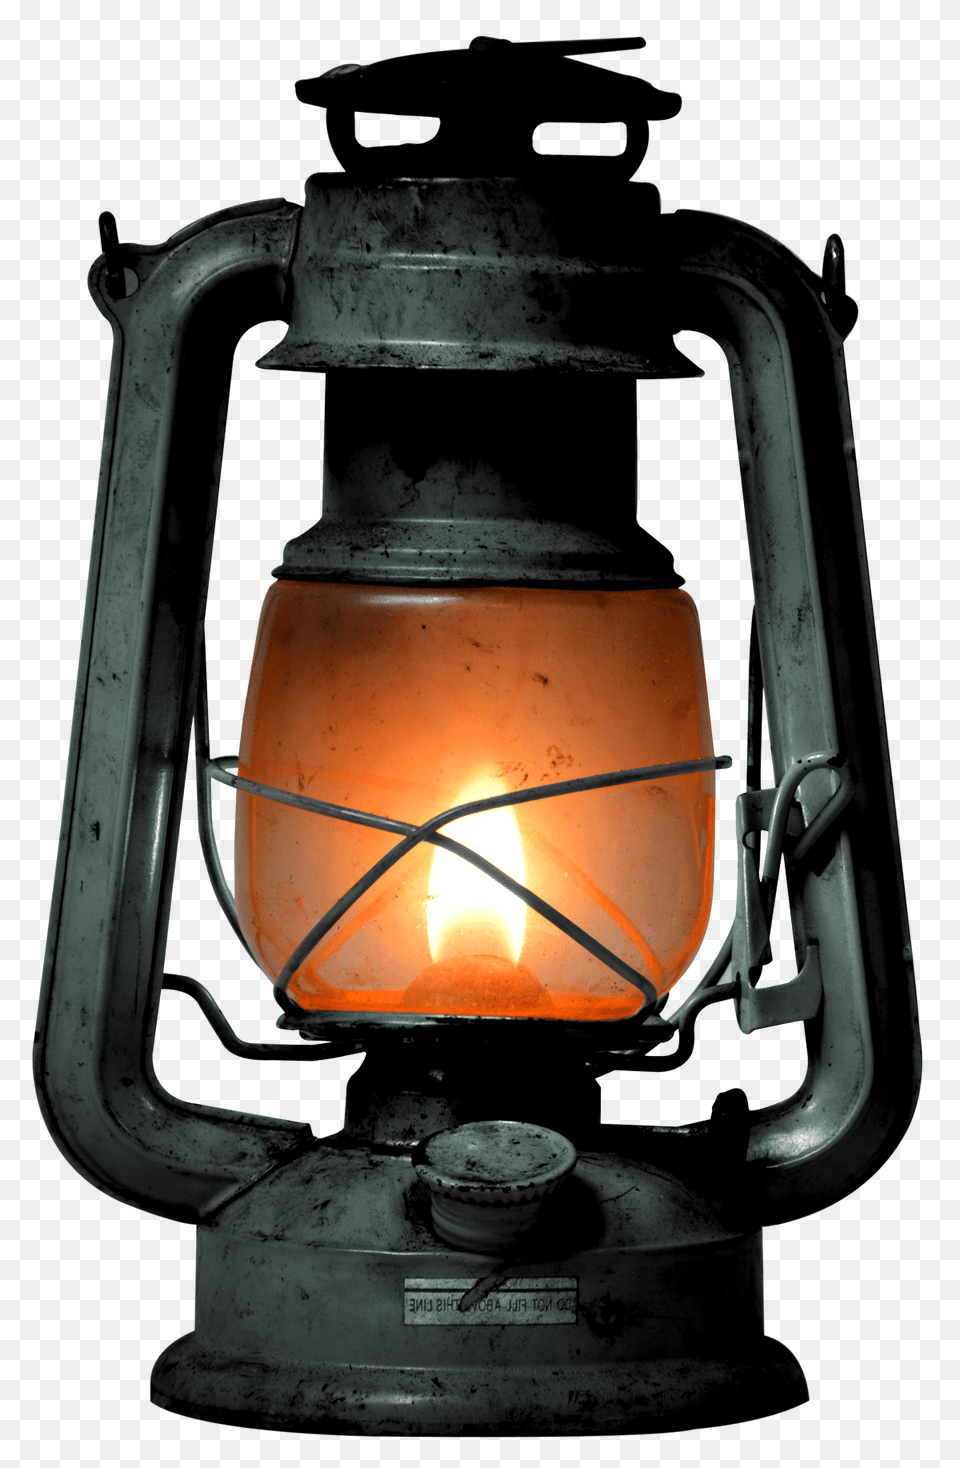 Old Kerosene Lamp Image, Lantern, Lampshade, Device, Grass Free Transparent Png